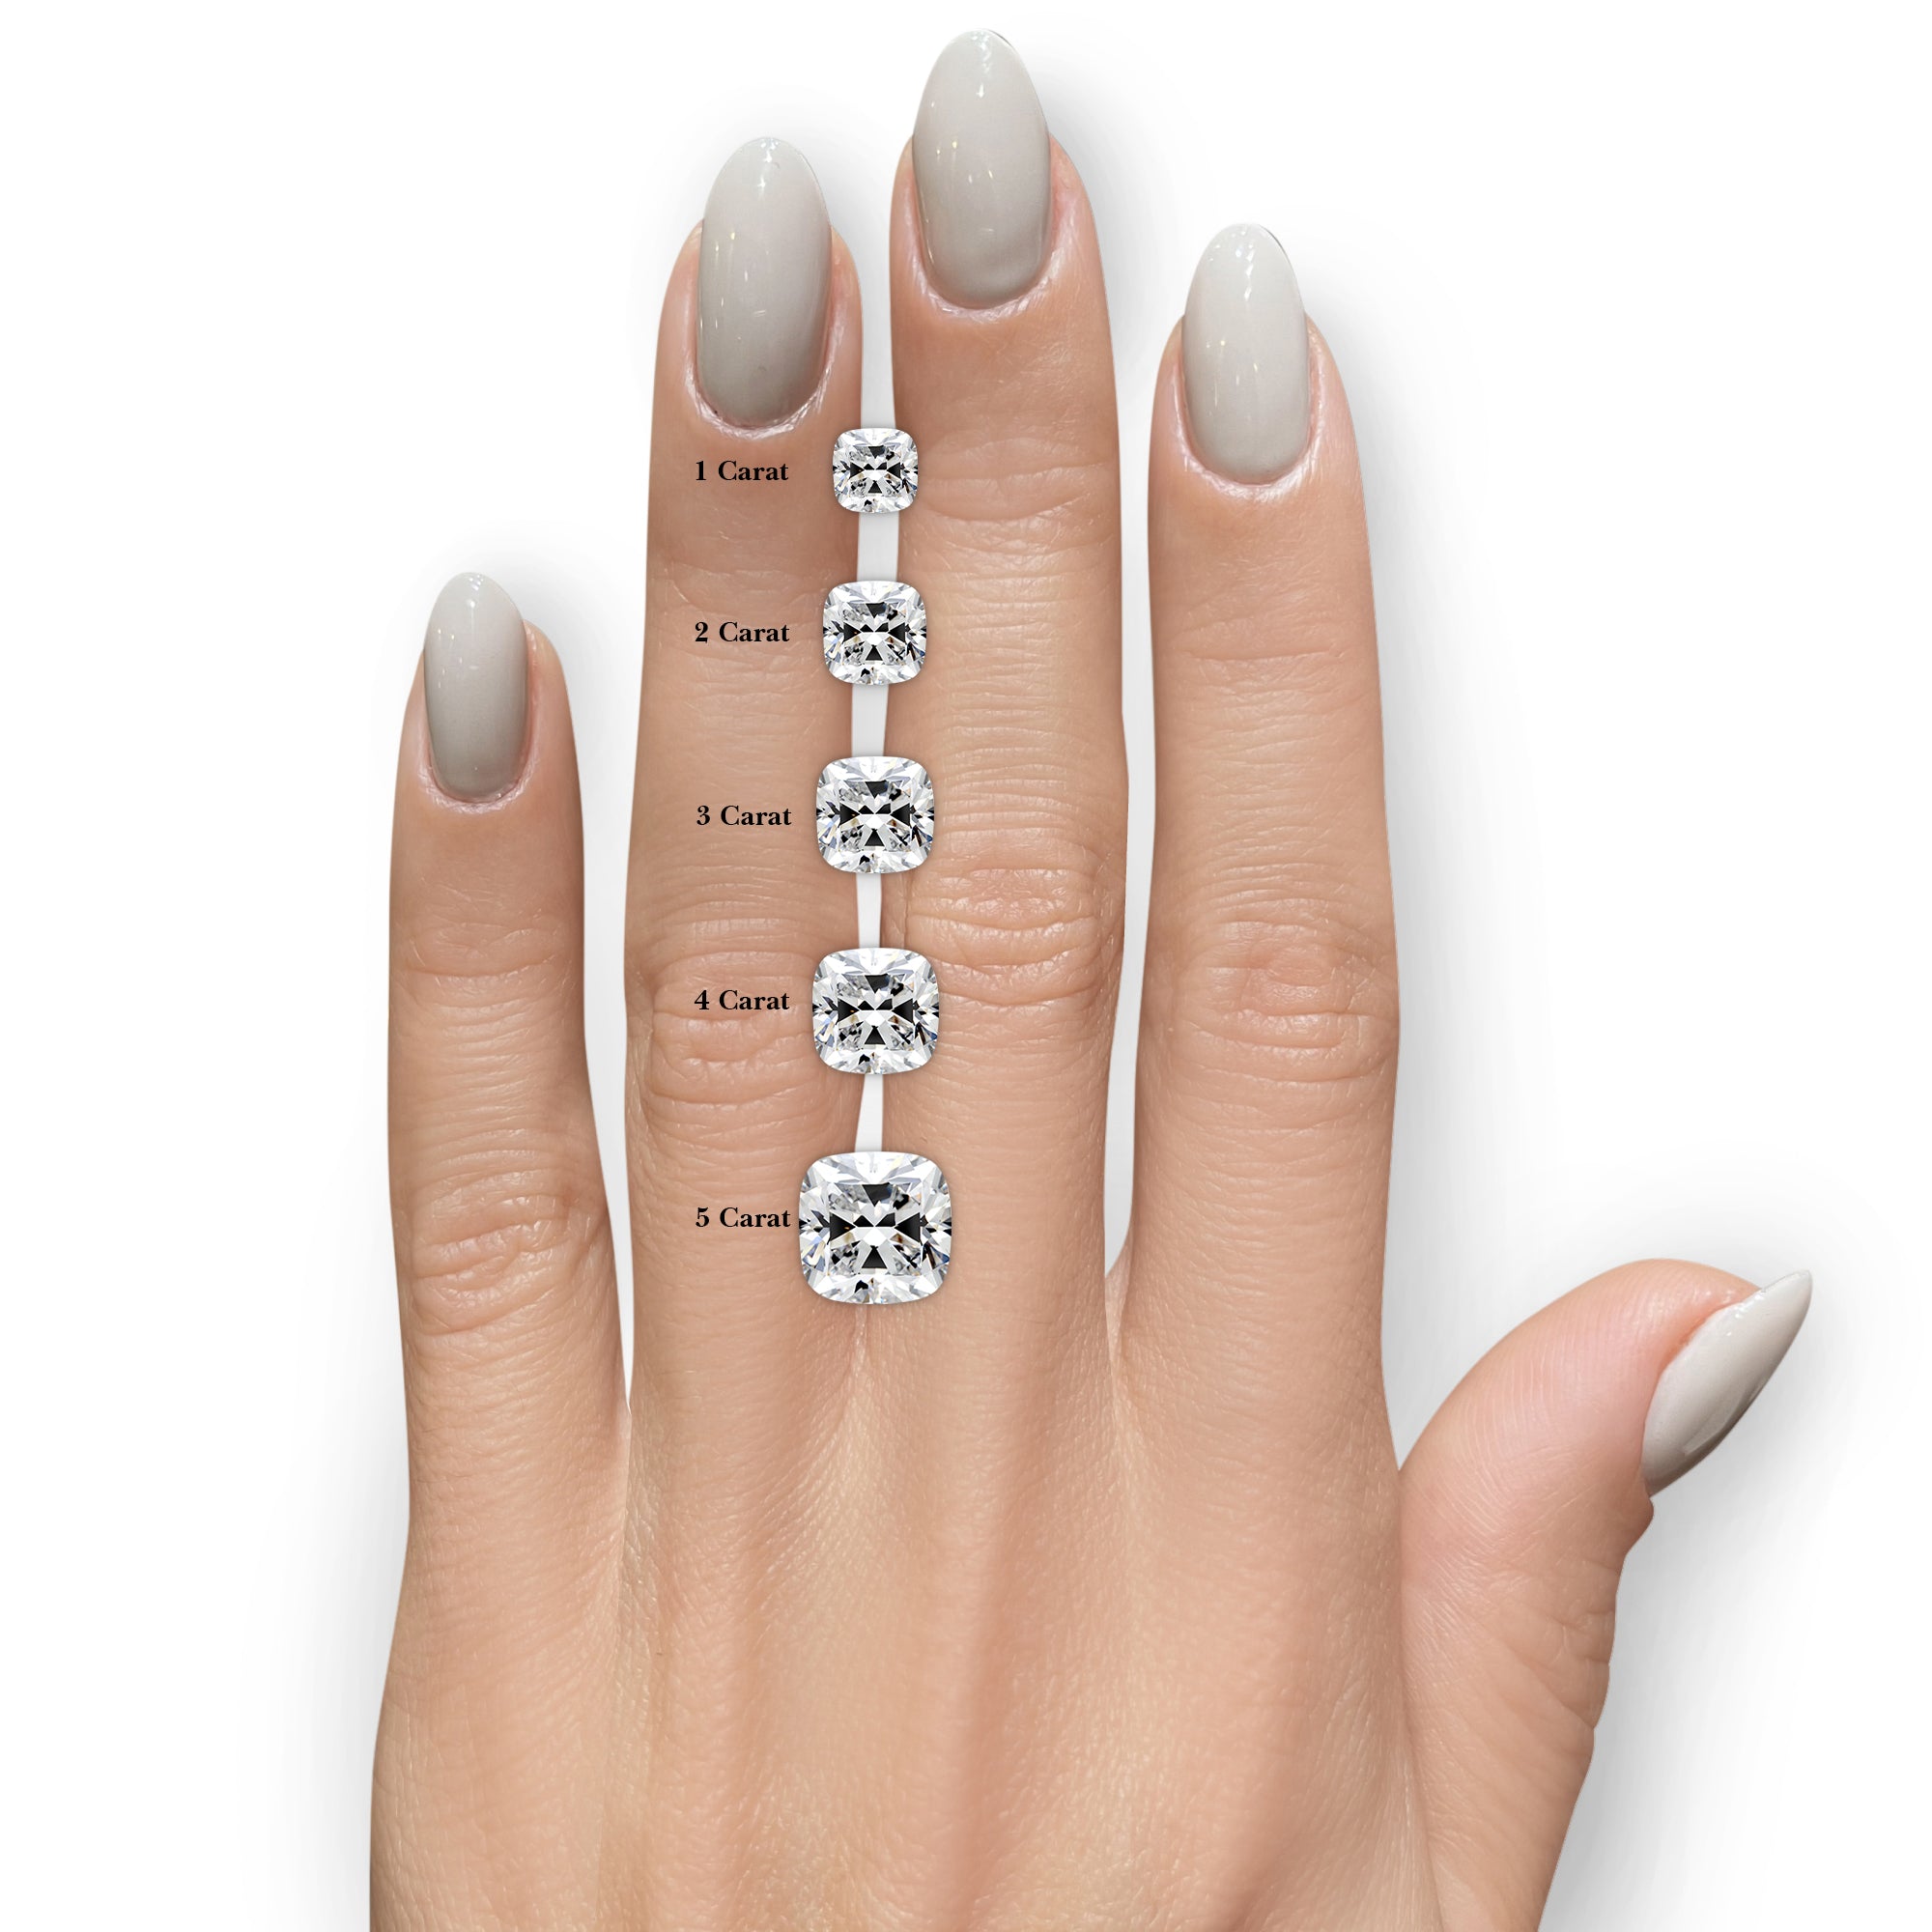 Deandra Diamond Engagement Ring -14K Rose Gold